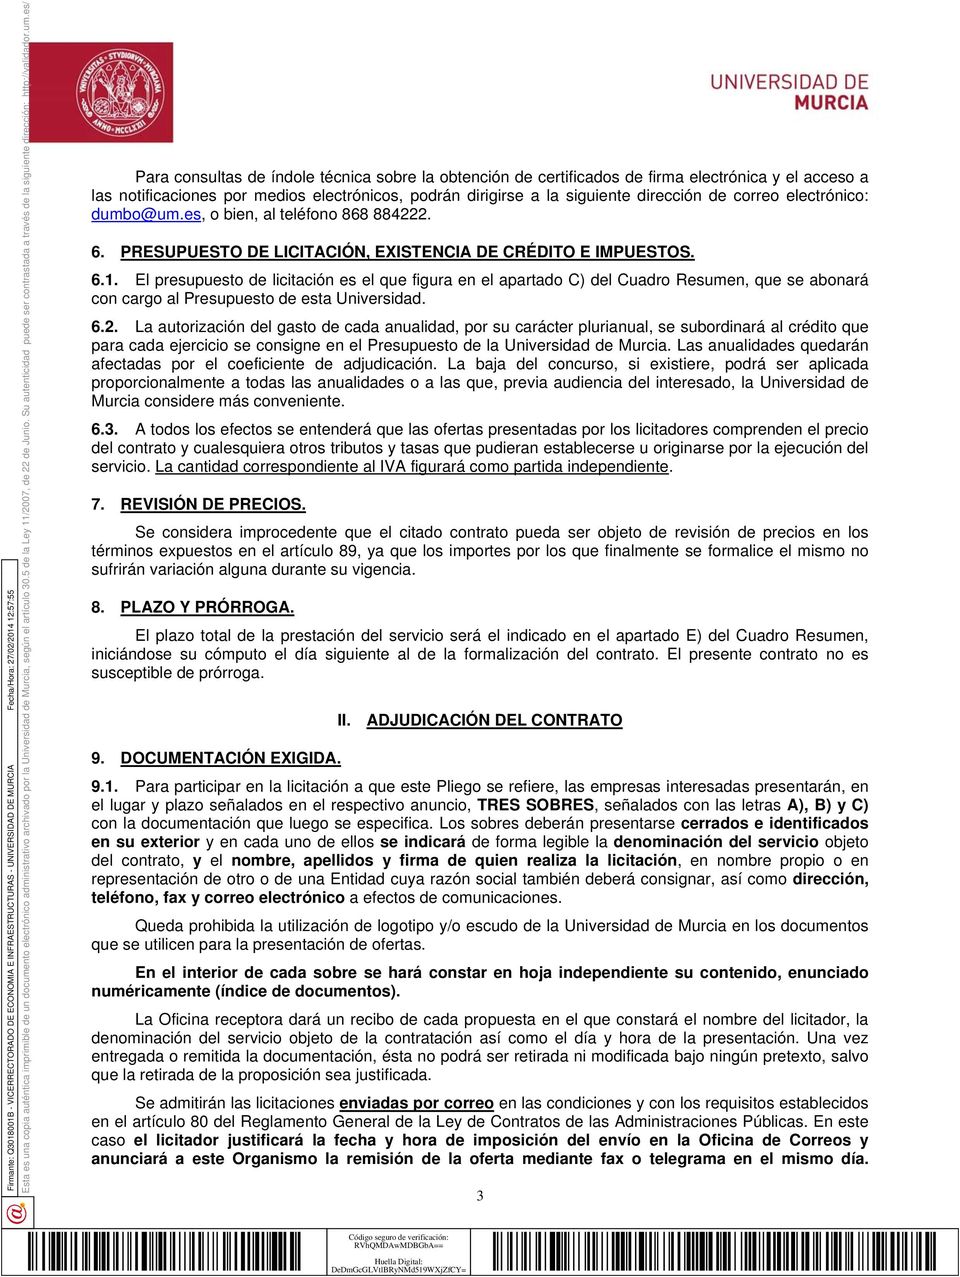 PRESUPUESTO DE LICITACIÓN, EXISTENCIA DE CRÉDITO E IMPUESTOS. 6.1.